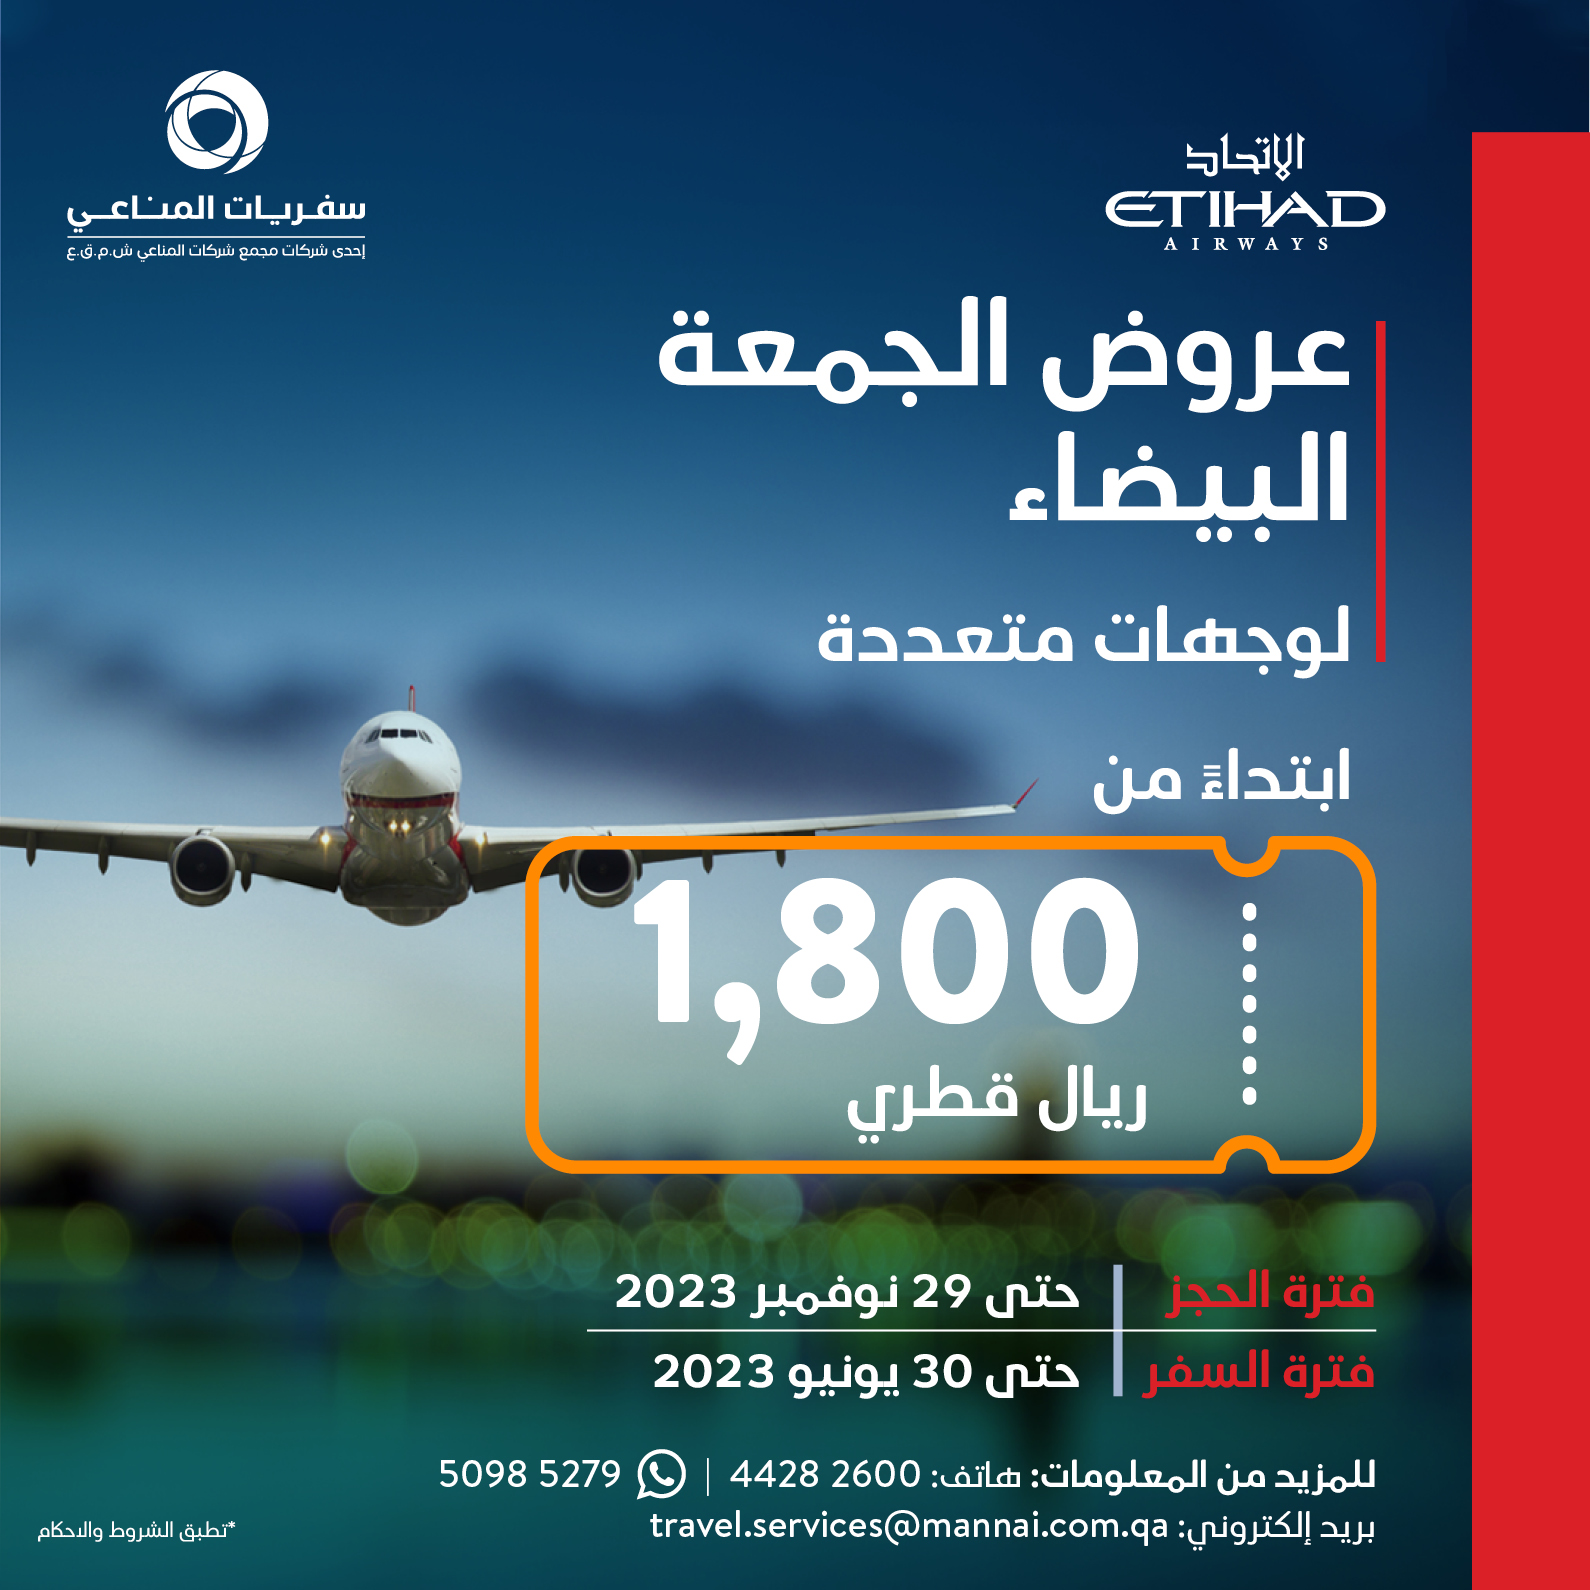 mannai air travel qatar